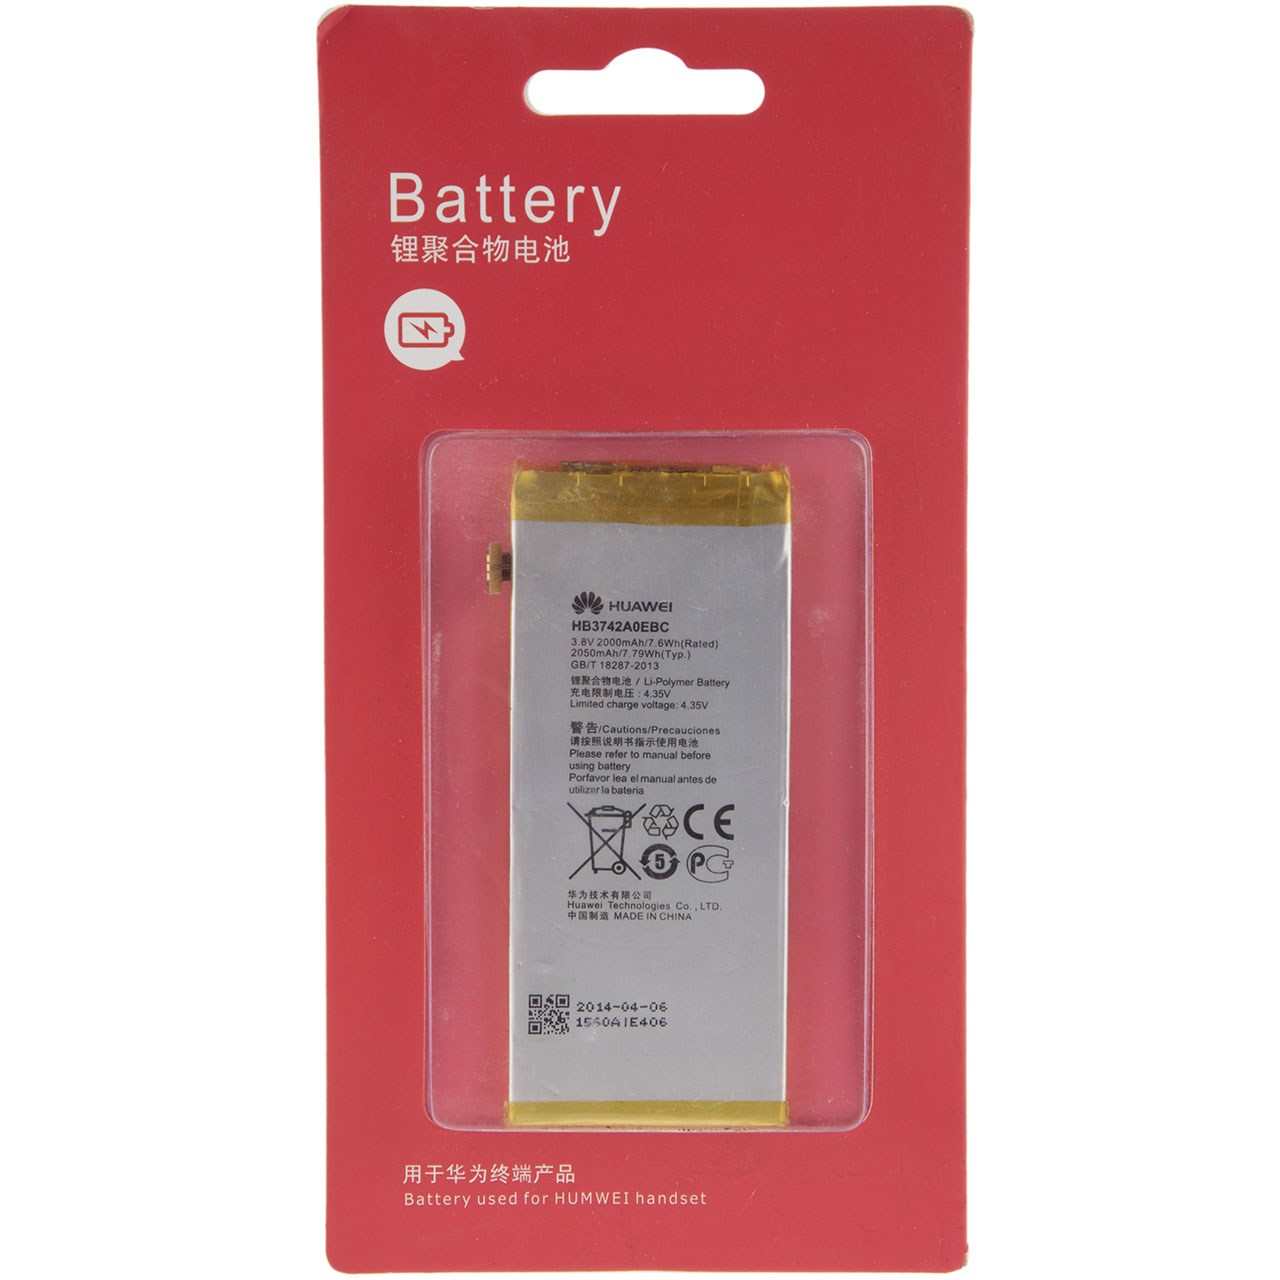 باتری موبایل مدل HB3742A0EBC با ظرفیت 2000mAh مناسب برای گوشی موبایل هوآوی G630